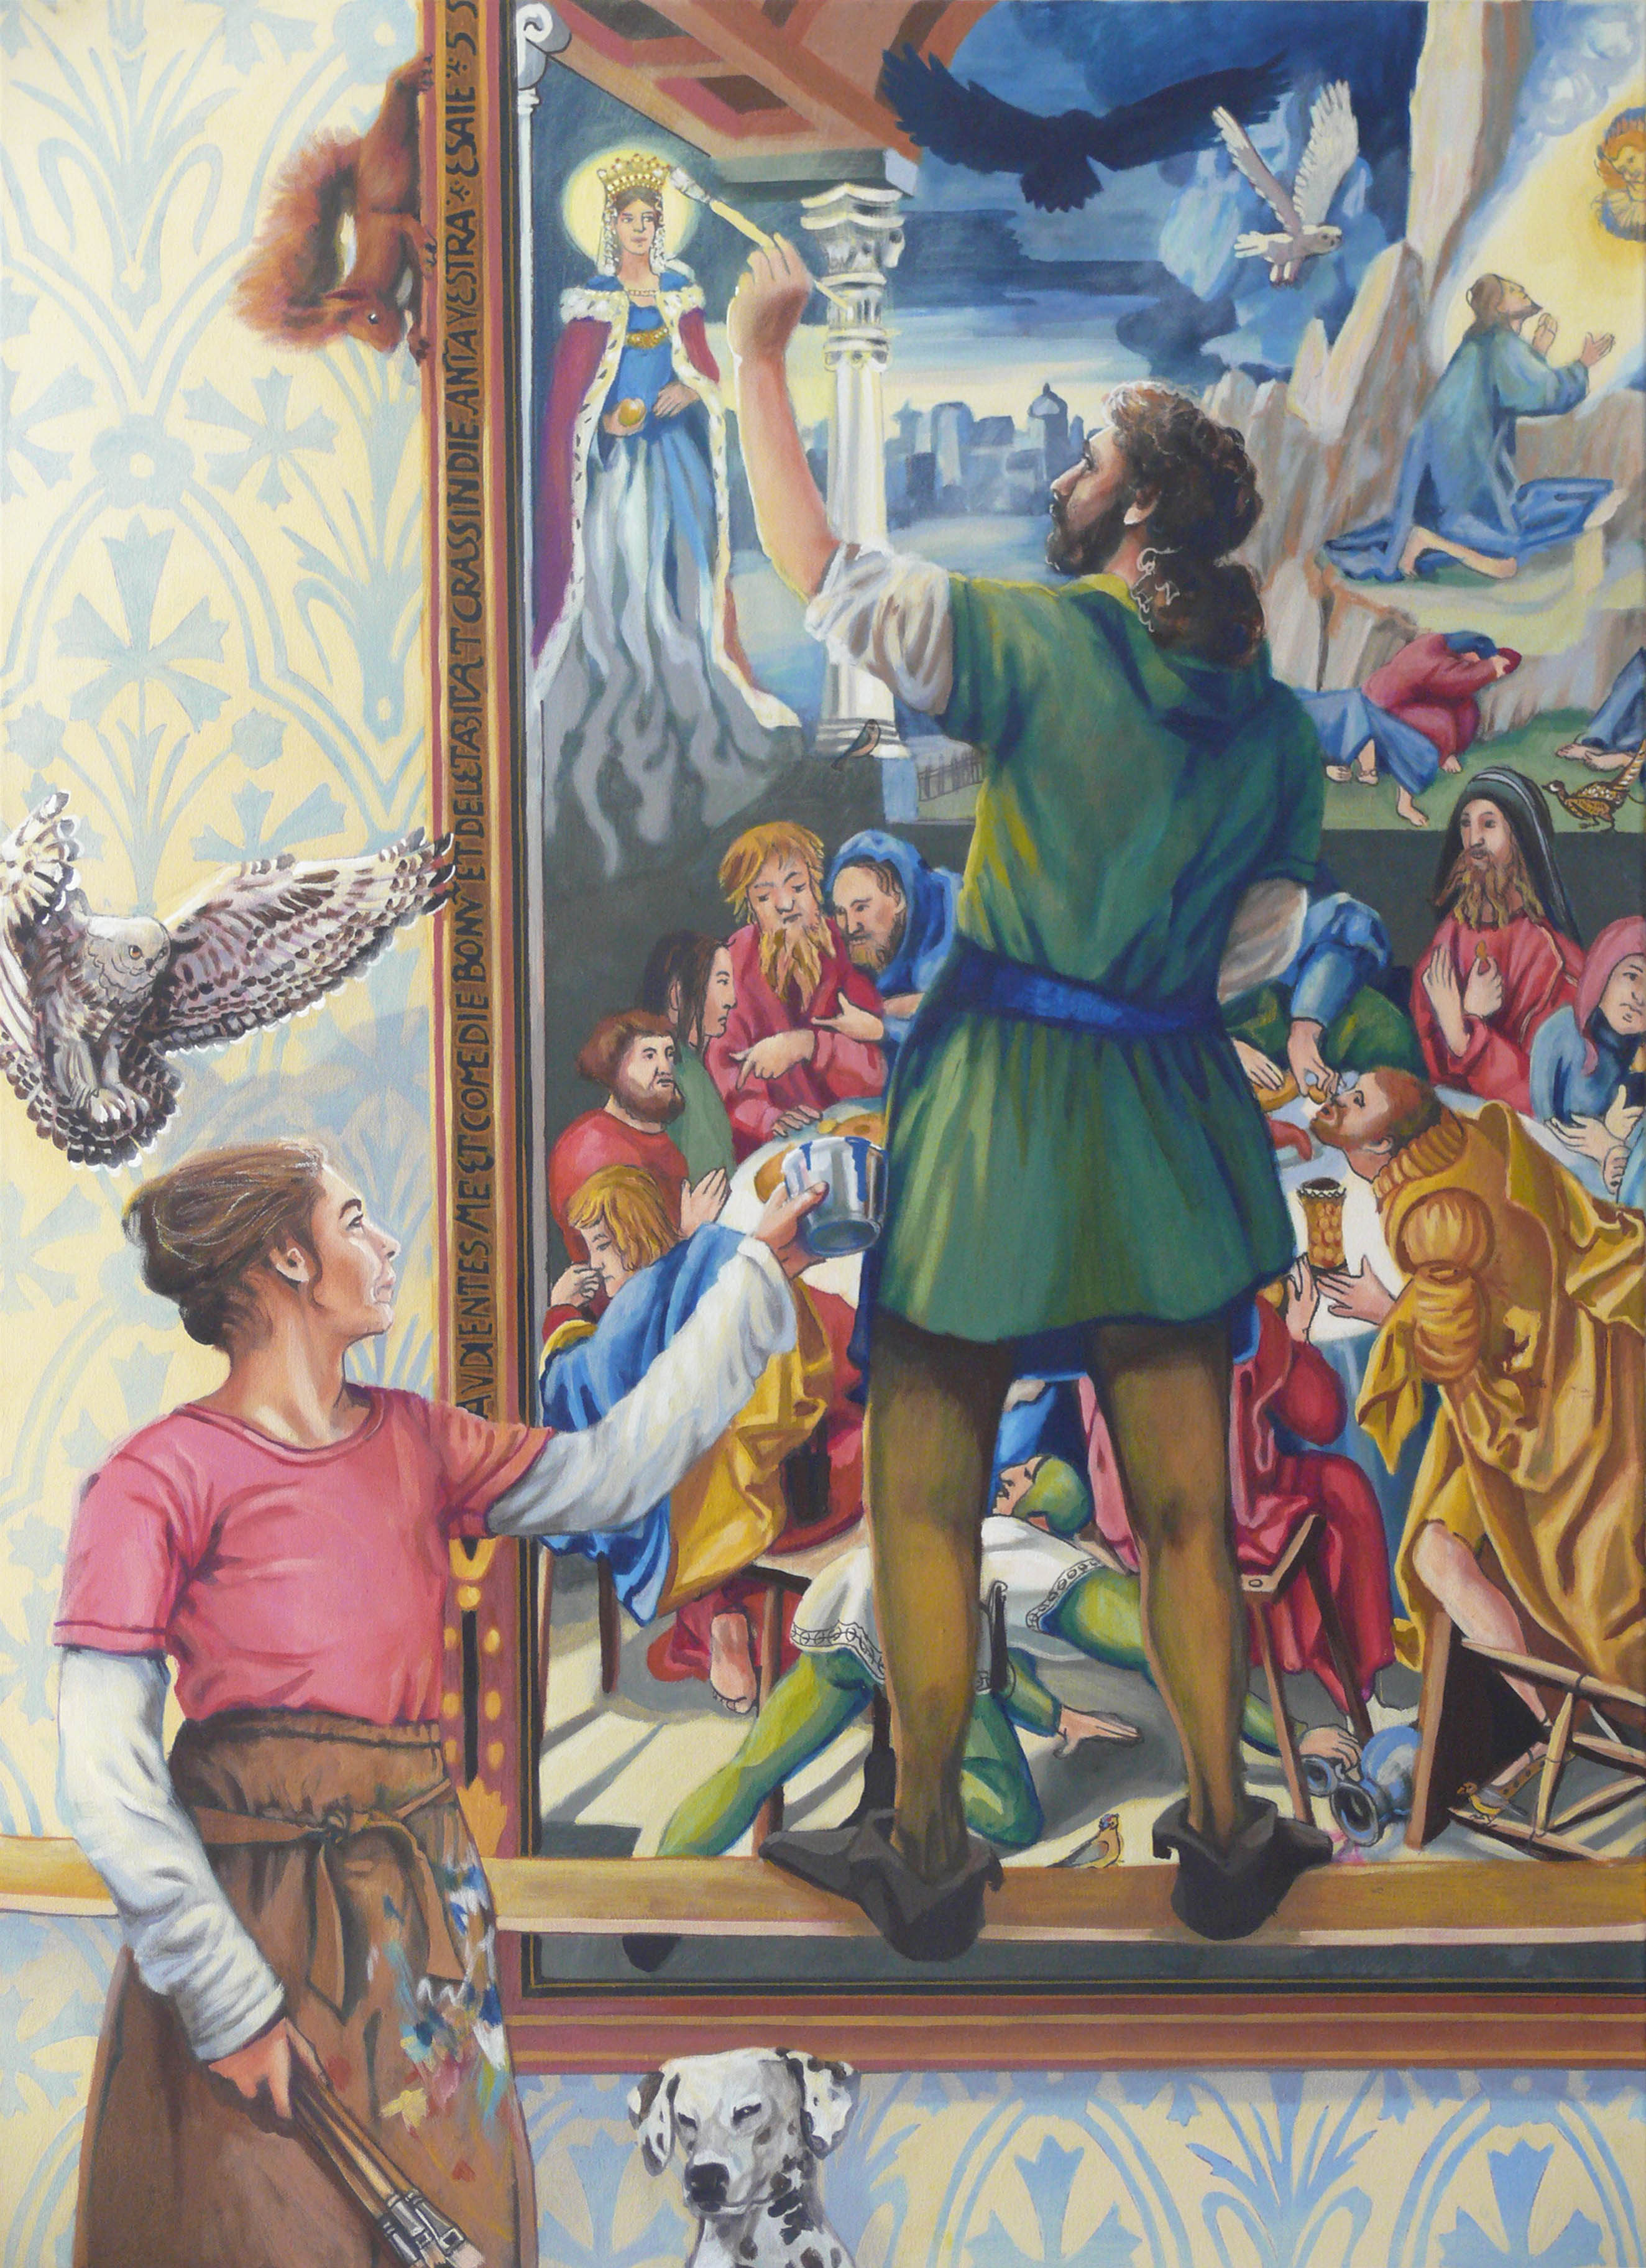 Beate Blankenhorn - Malerei - Eitempera auf Leinwand - Jerg Ratgeb, Maler und Bauernführer, beim Malen des Herrenberger Altars